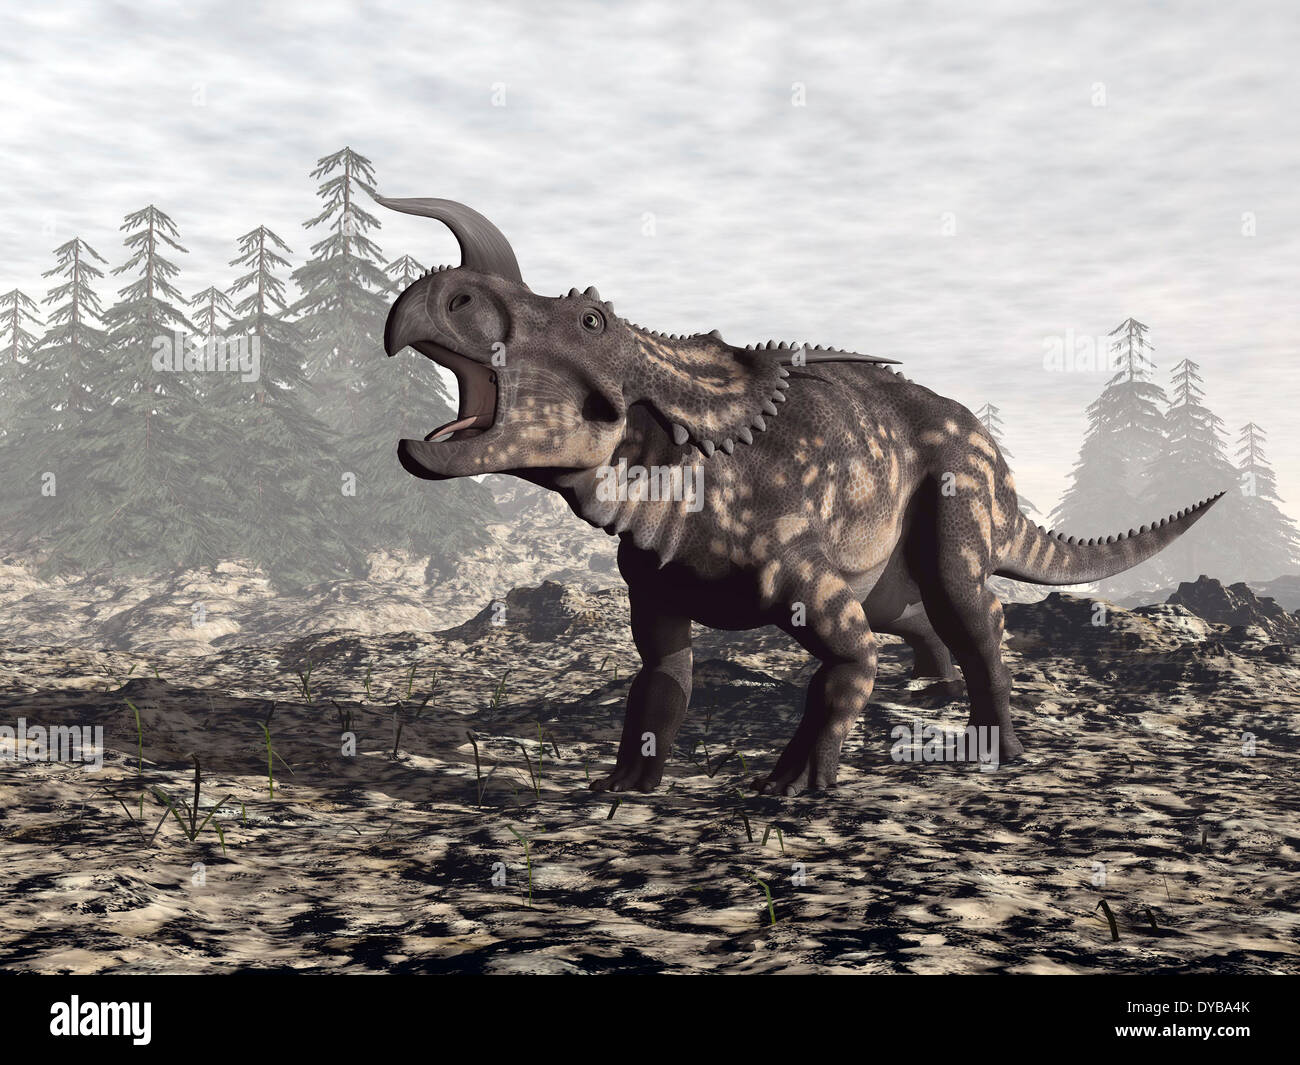 Dinosauro Einiosaurus ruggente in natura. Foto Stock